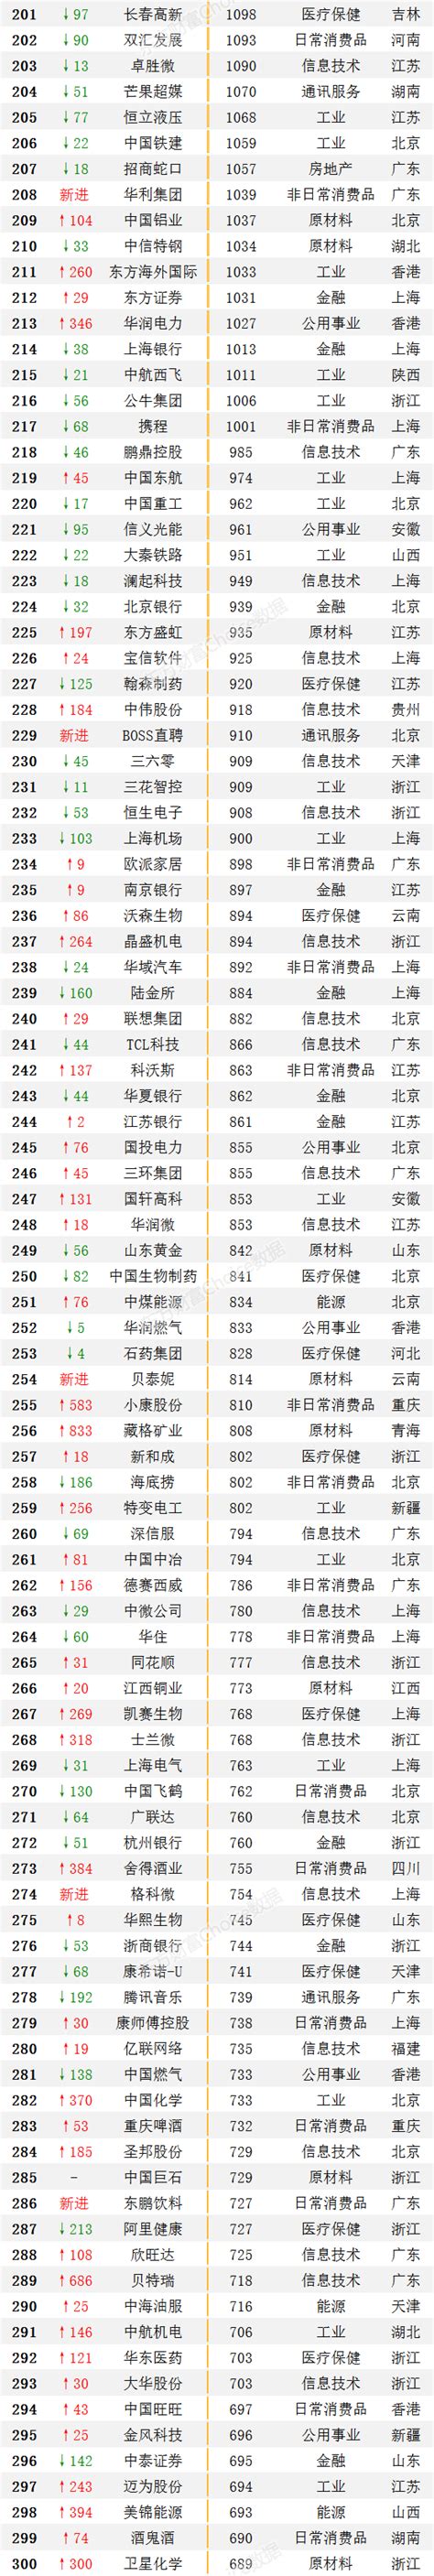 《财富》中国500强发布，中天科技排位再向前 - 中天头条 - 中天科技集团